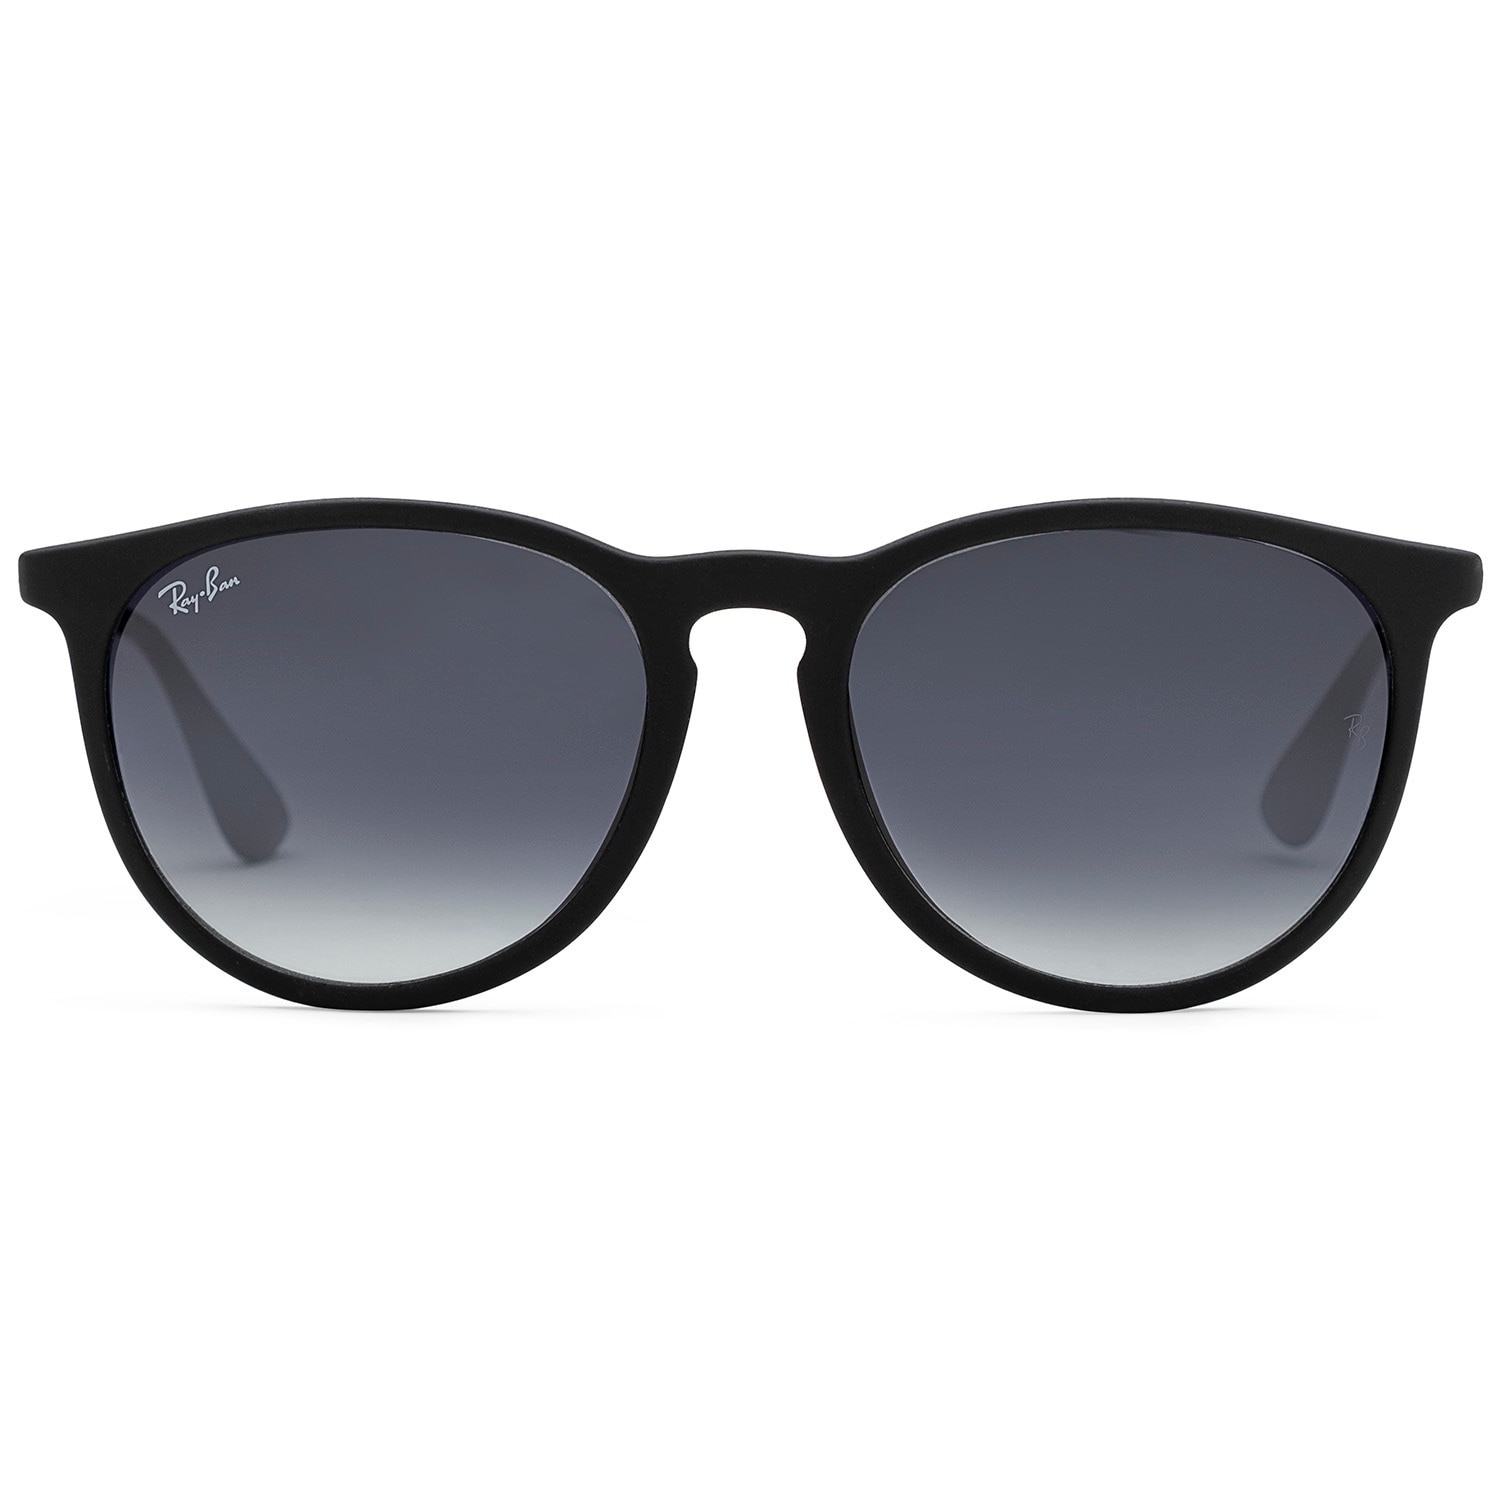 ray ban erika sunglasses review